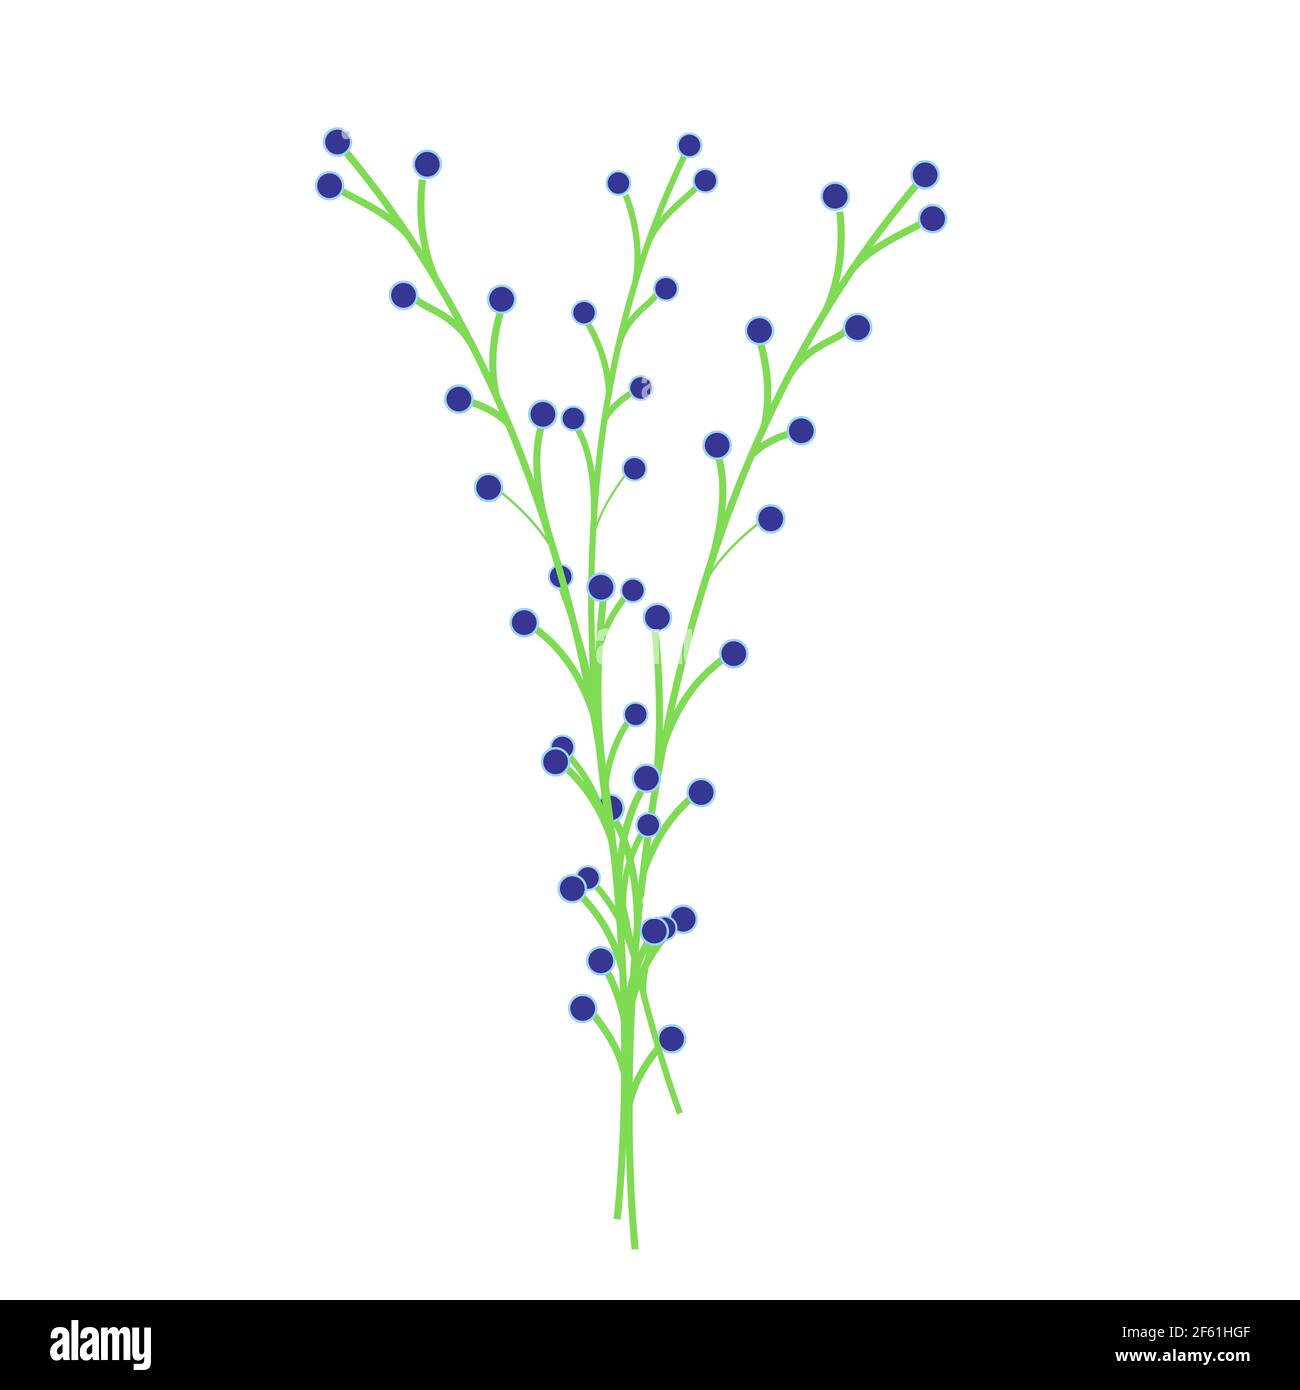 Grüne Zweige mit blauen Beeren, florales Dekorelement, Blume mit kleinen blauen Knospen, Dekor für Blumensträuße, Vektorobjekt, Illustration im flachen Stil. Stock Vektor